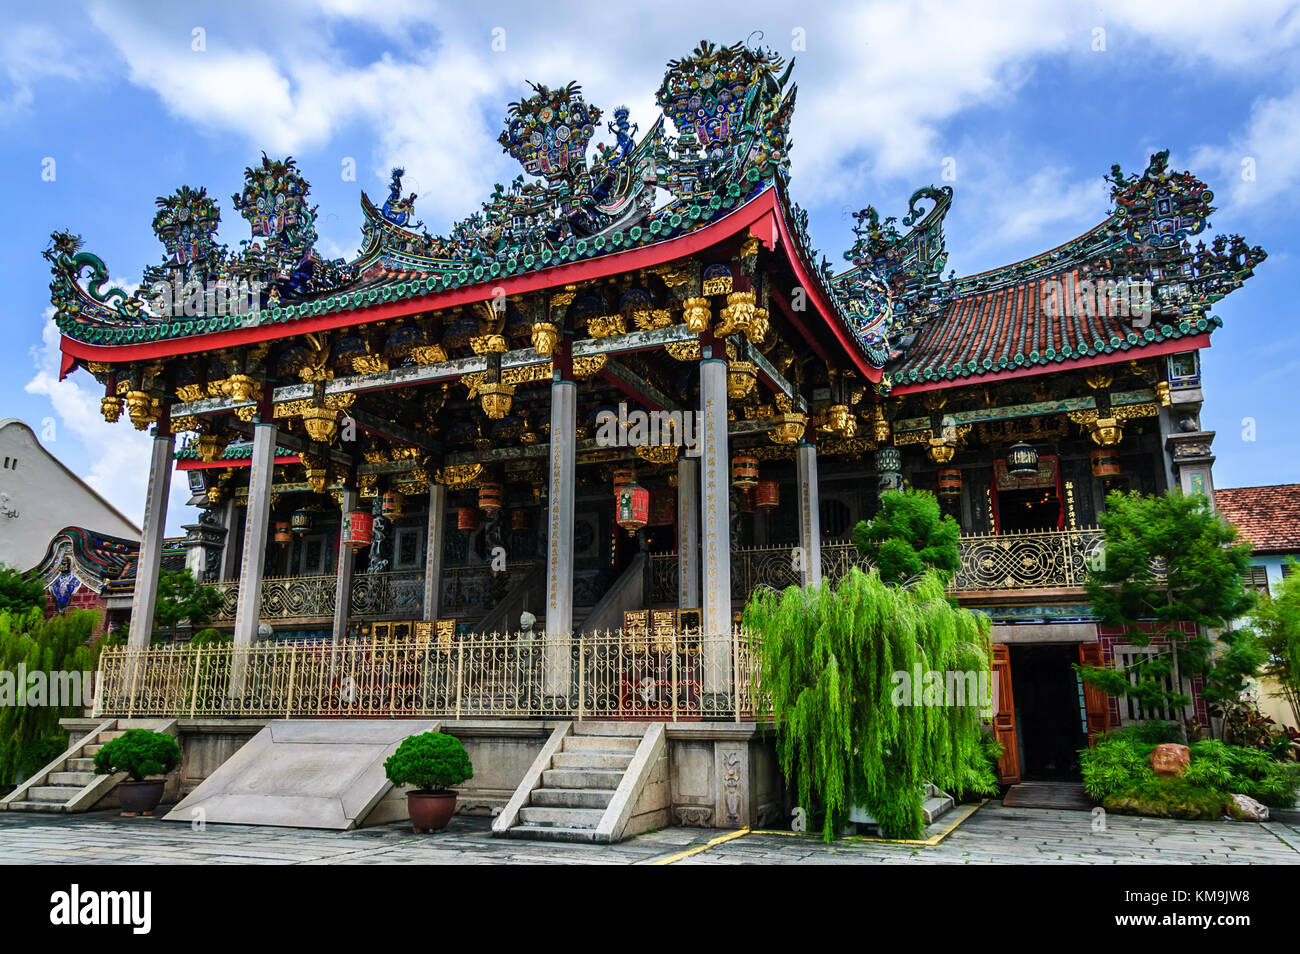 Penang, Malaisie - septembre 3, 2013 : célèbre clanhouse chinois Khoo Kongsi leong san tong temple chinois, une attraction majeure dans la ville historique de George Town Banque D'Images